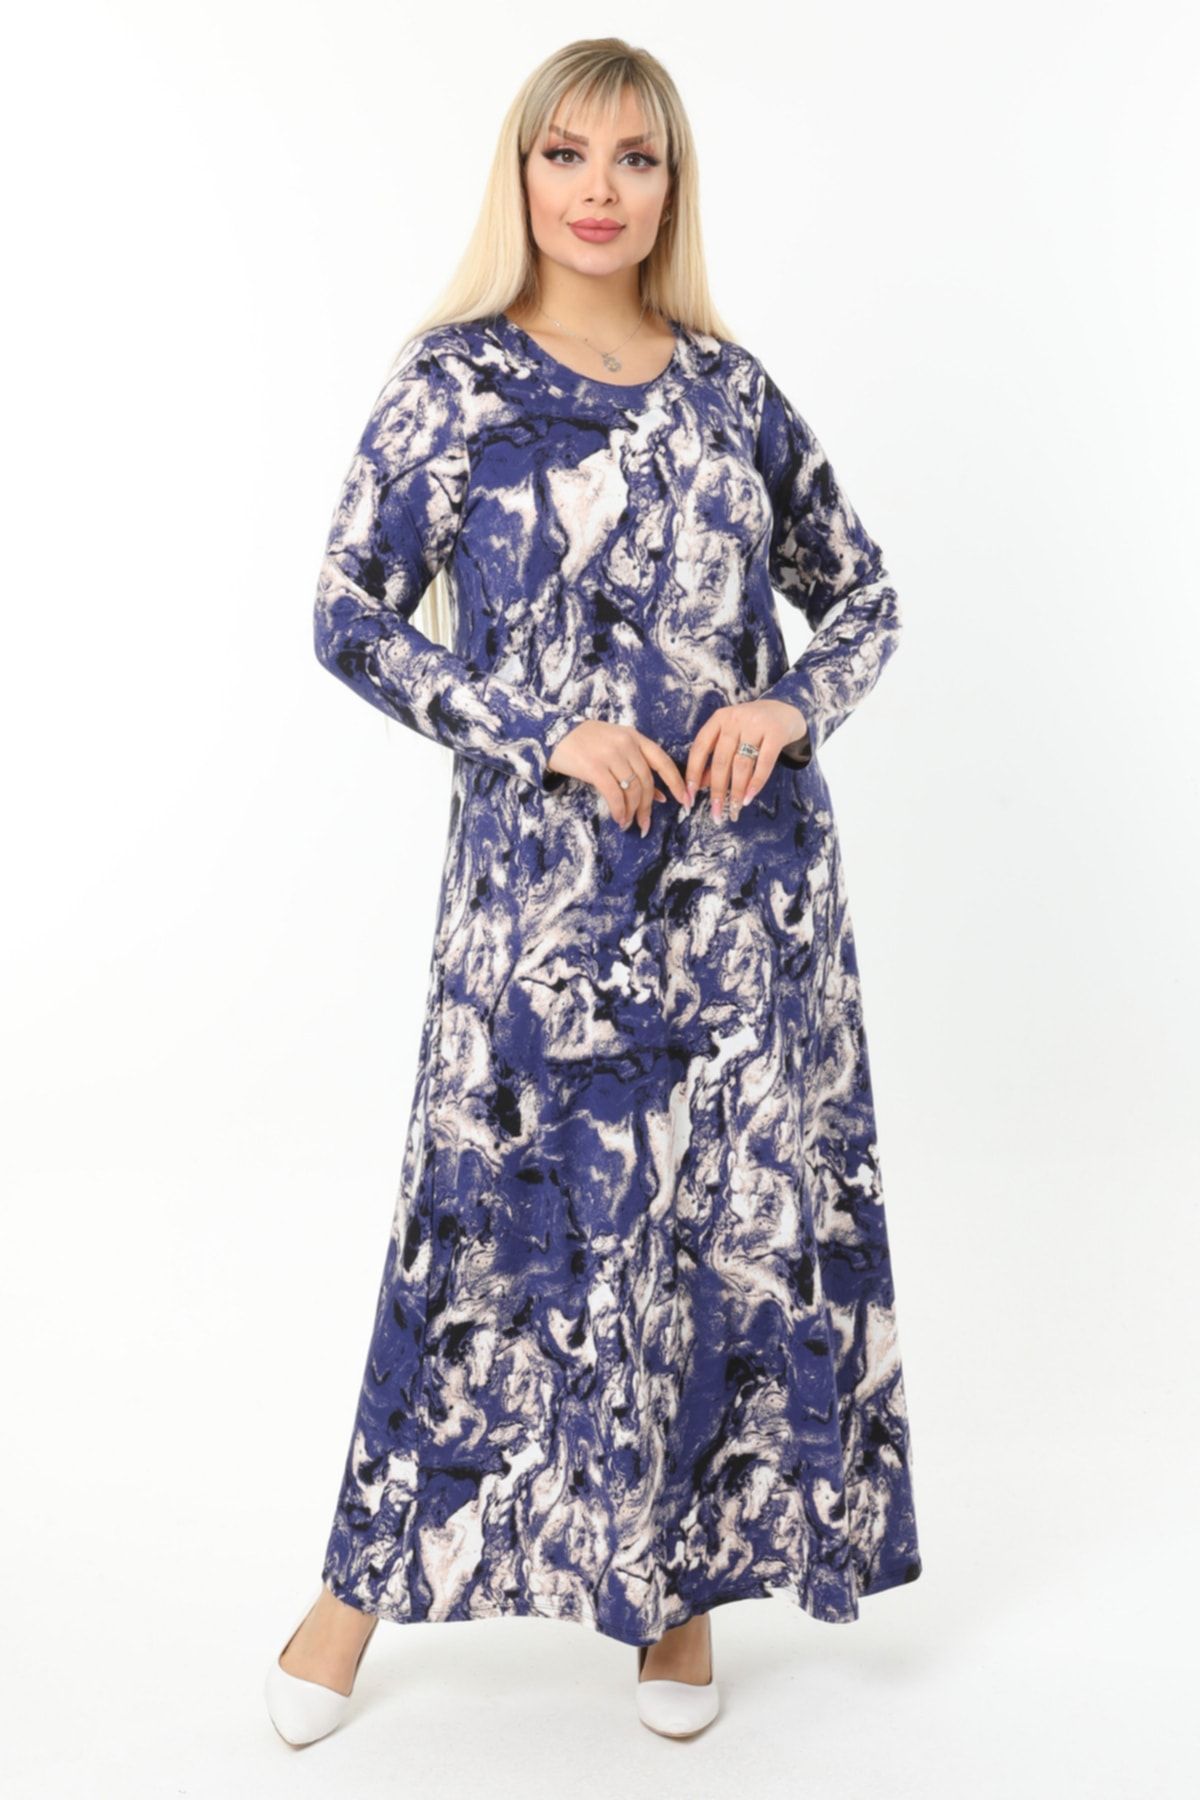 HERAXL Kadın Mavi Batik Desen Yakası Pervazlı Büyük Beden Viskon Uzun Elbise